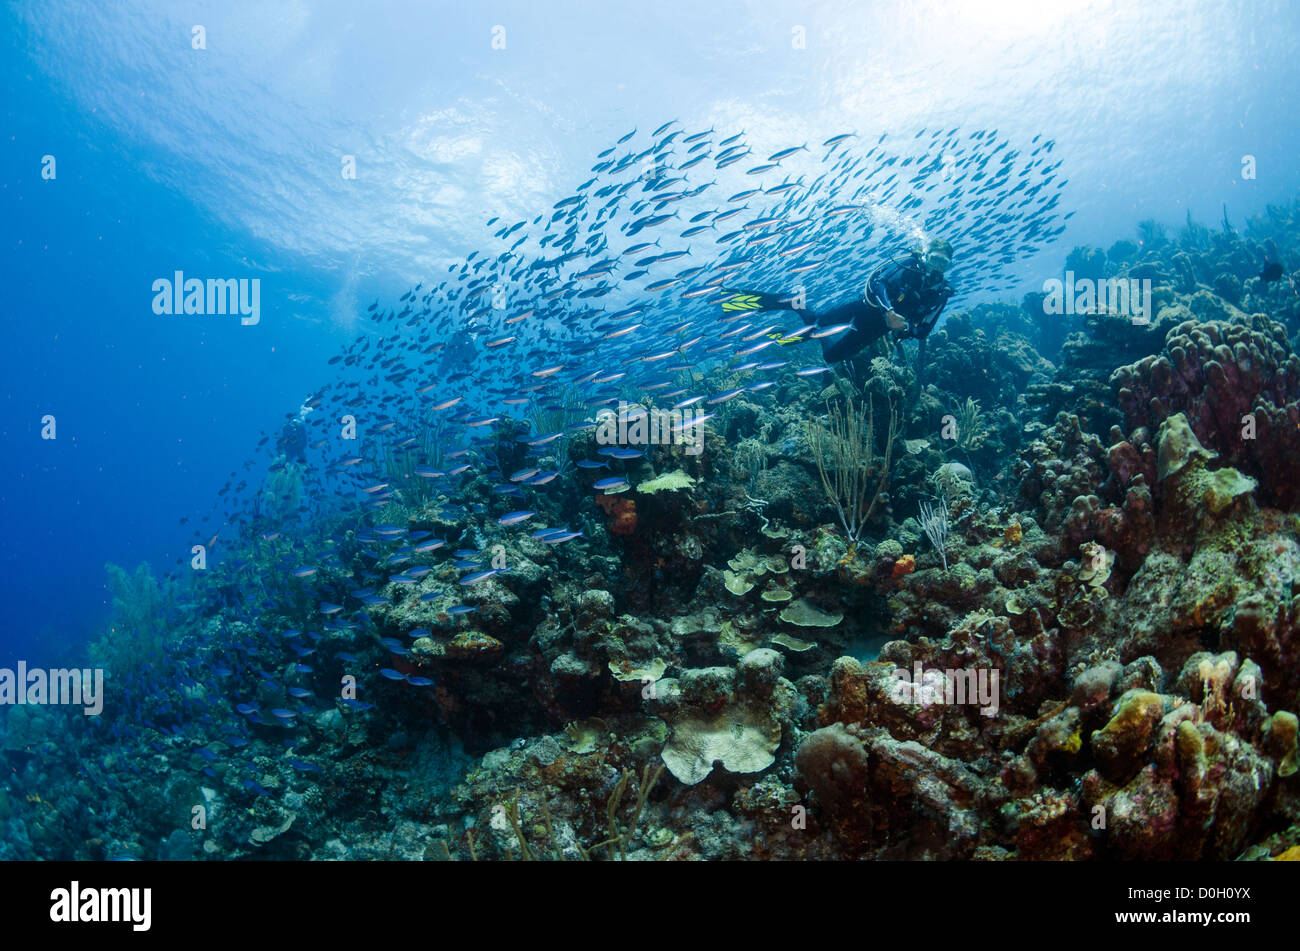 La scolarizzazione pesci di scogliera, Bonaire, Antille Olandesi, Mar dei Caraibi Foto Stock